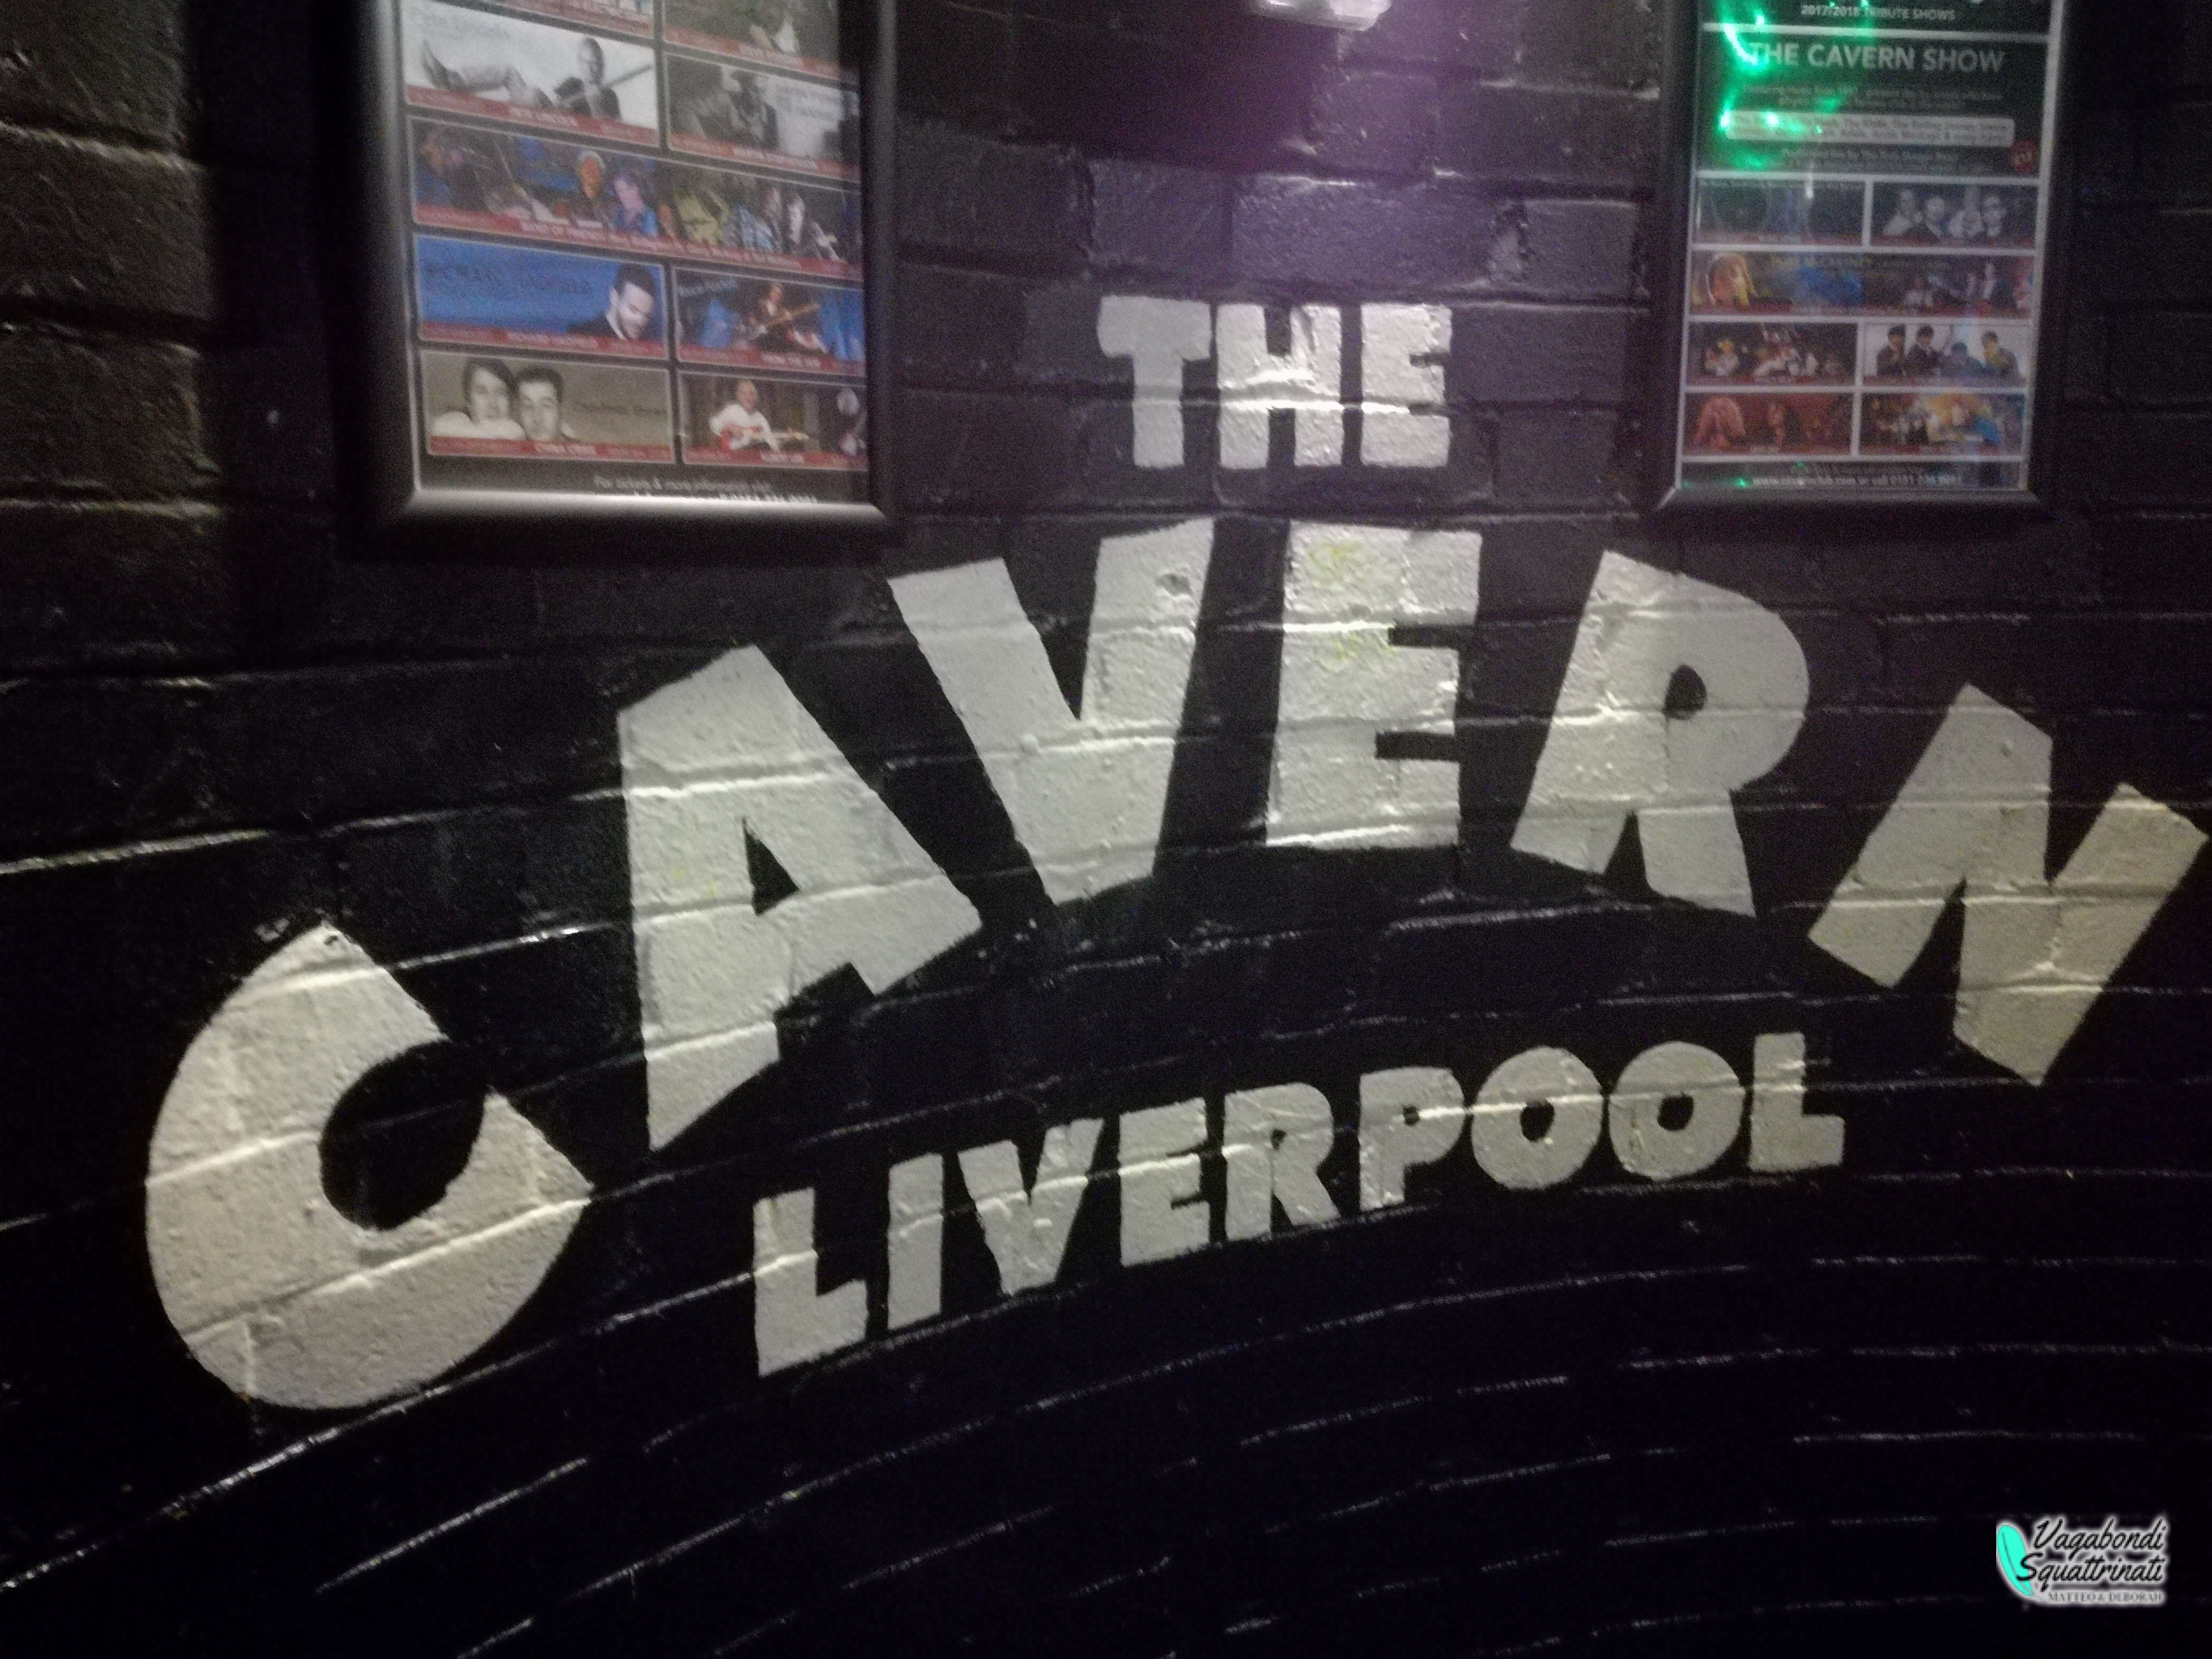 cavern club